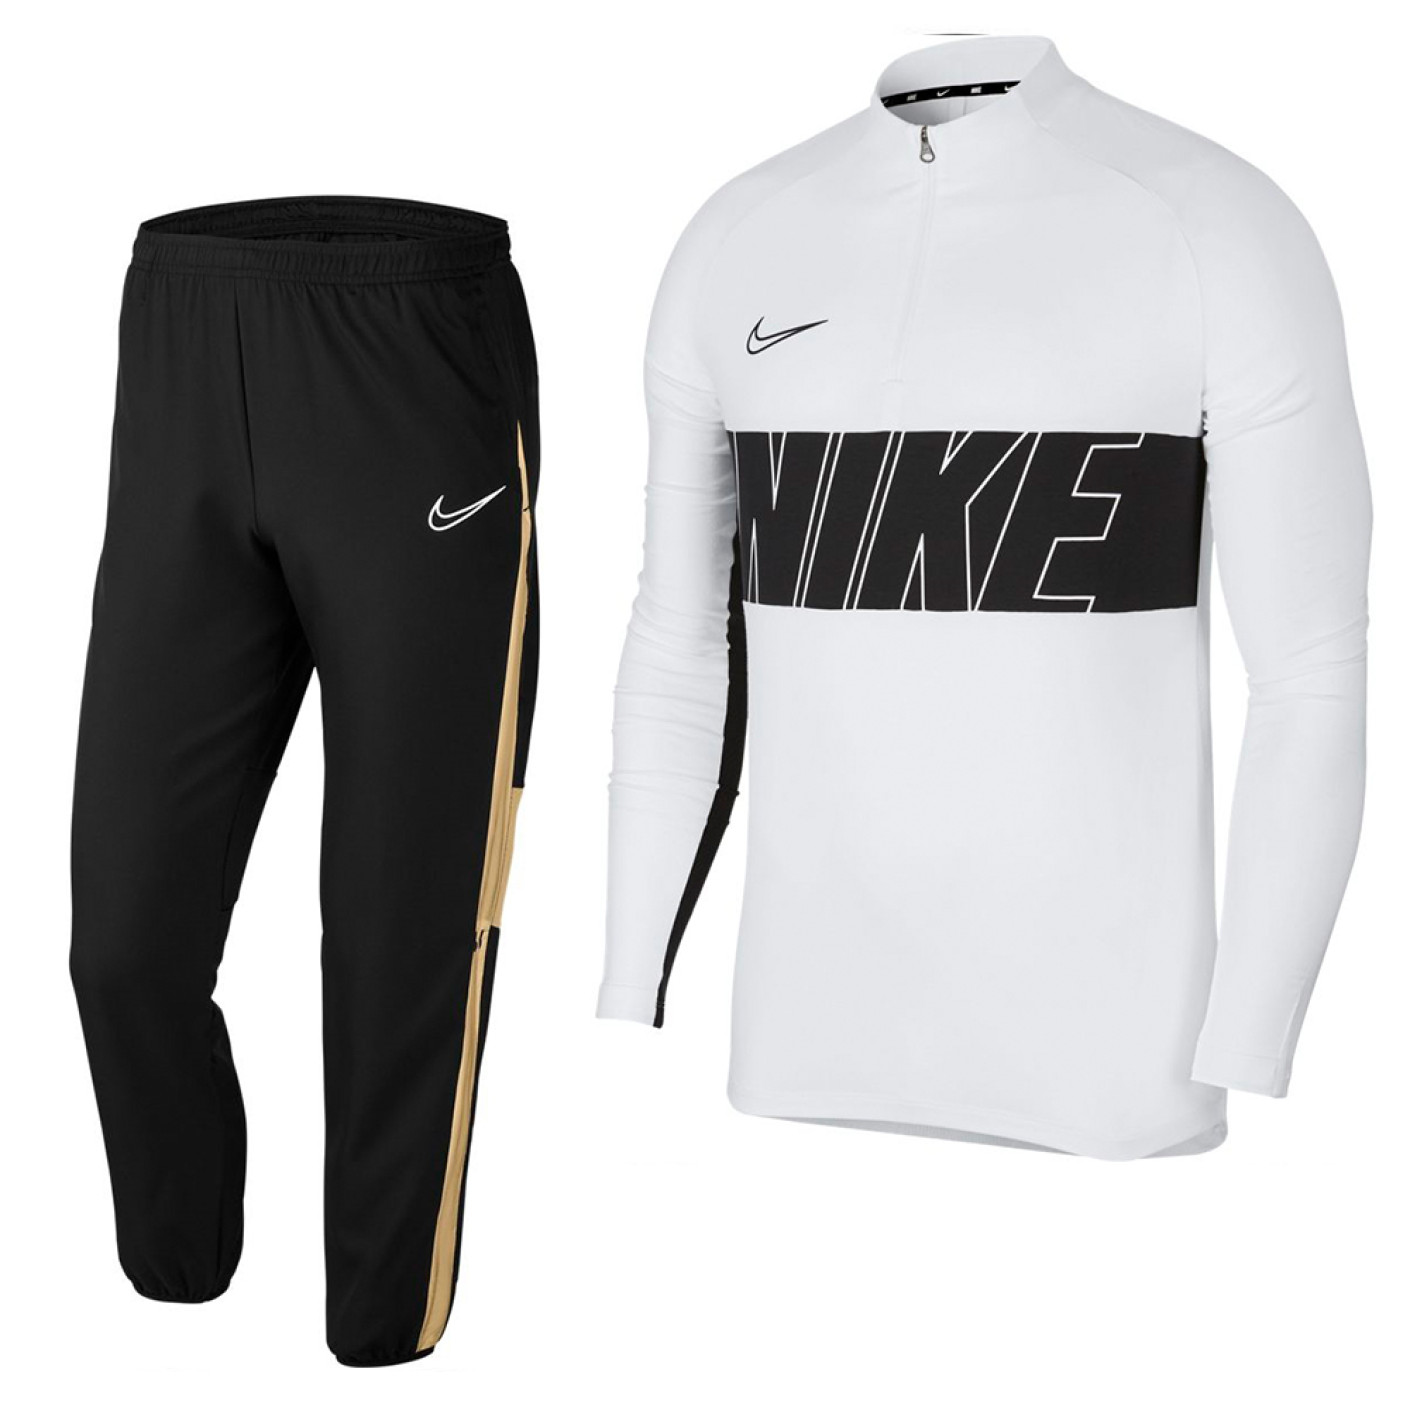 Nike Dry Academy Trainingspak Wit Zwart Goud